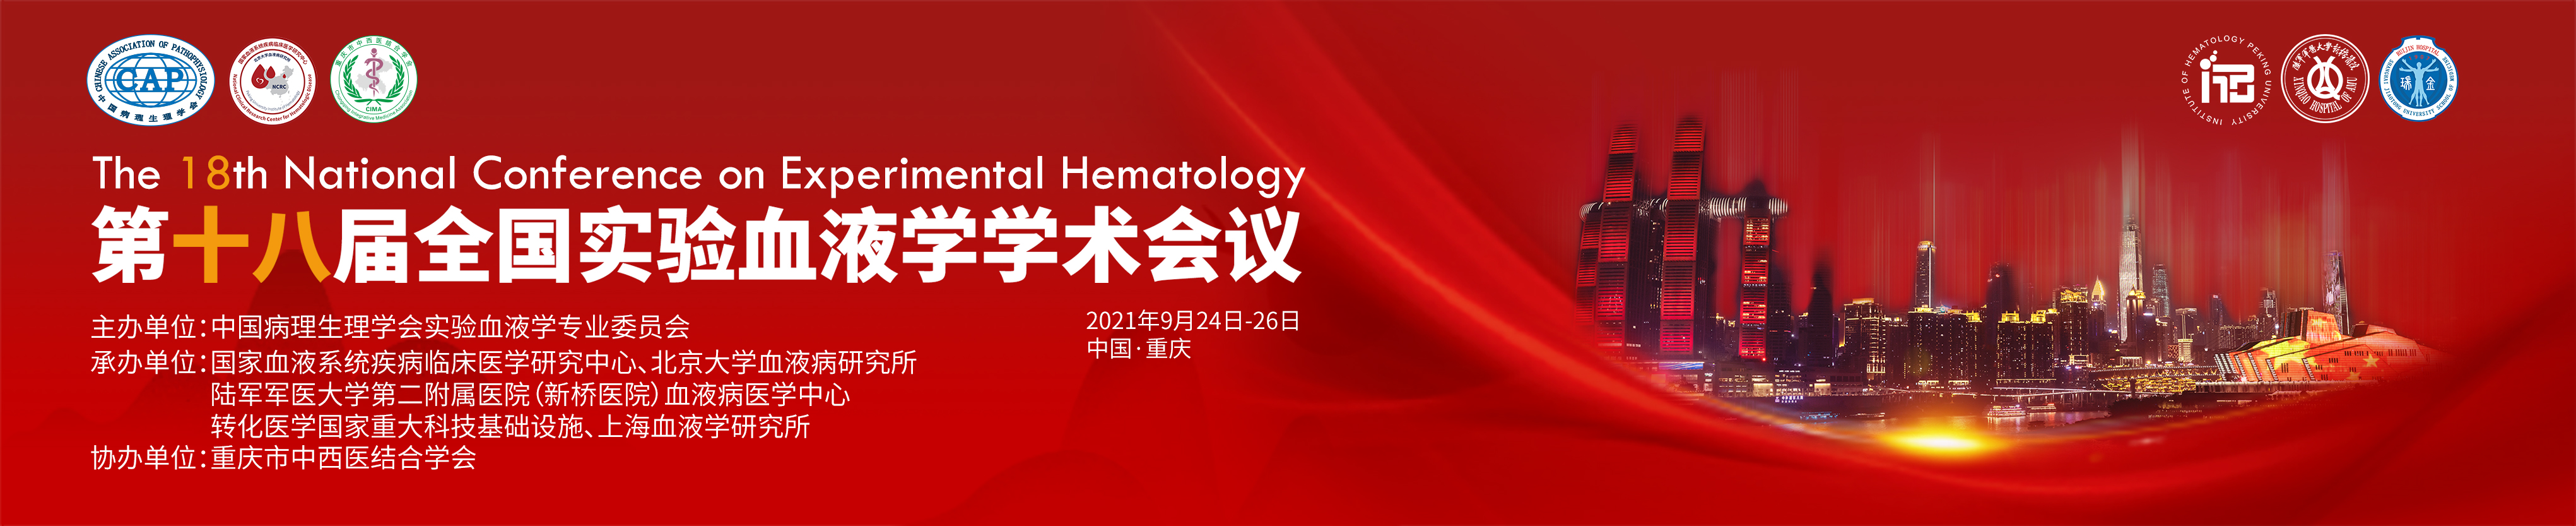 中国病理生理学会第十八届全国实验血液学学术会议